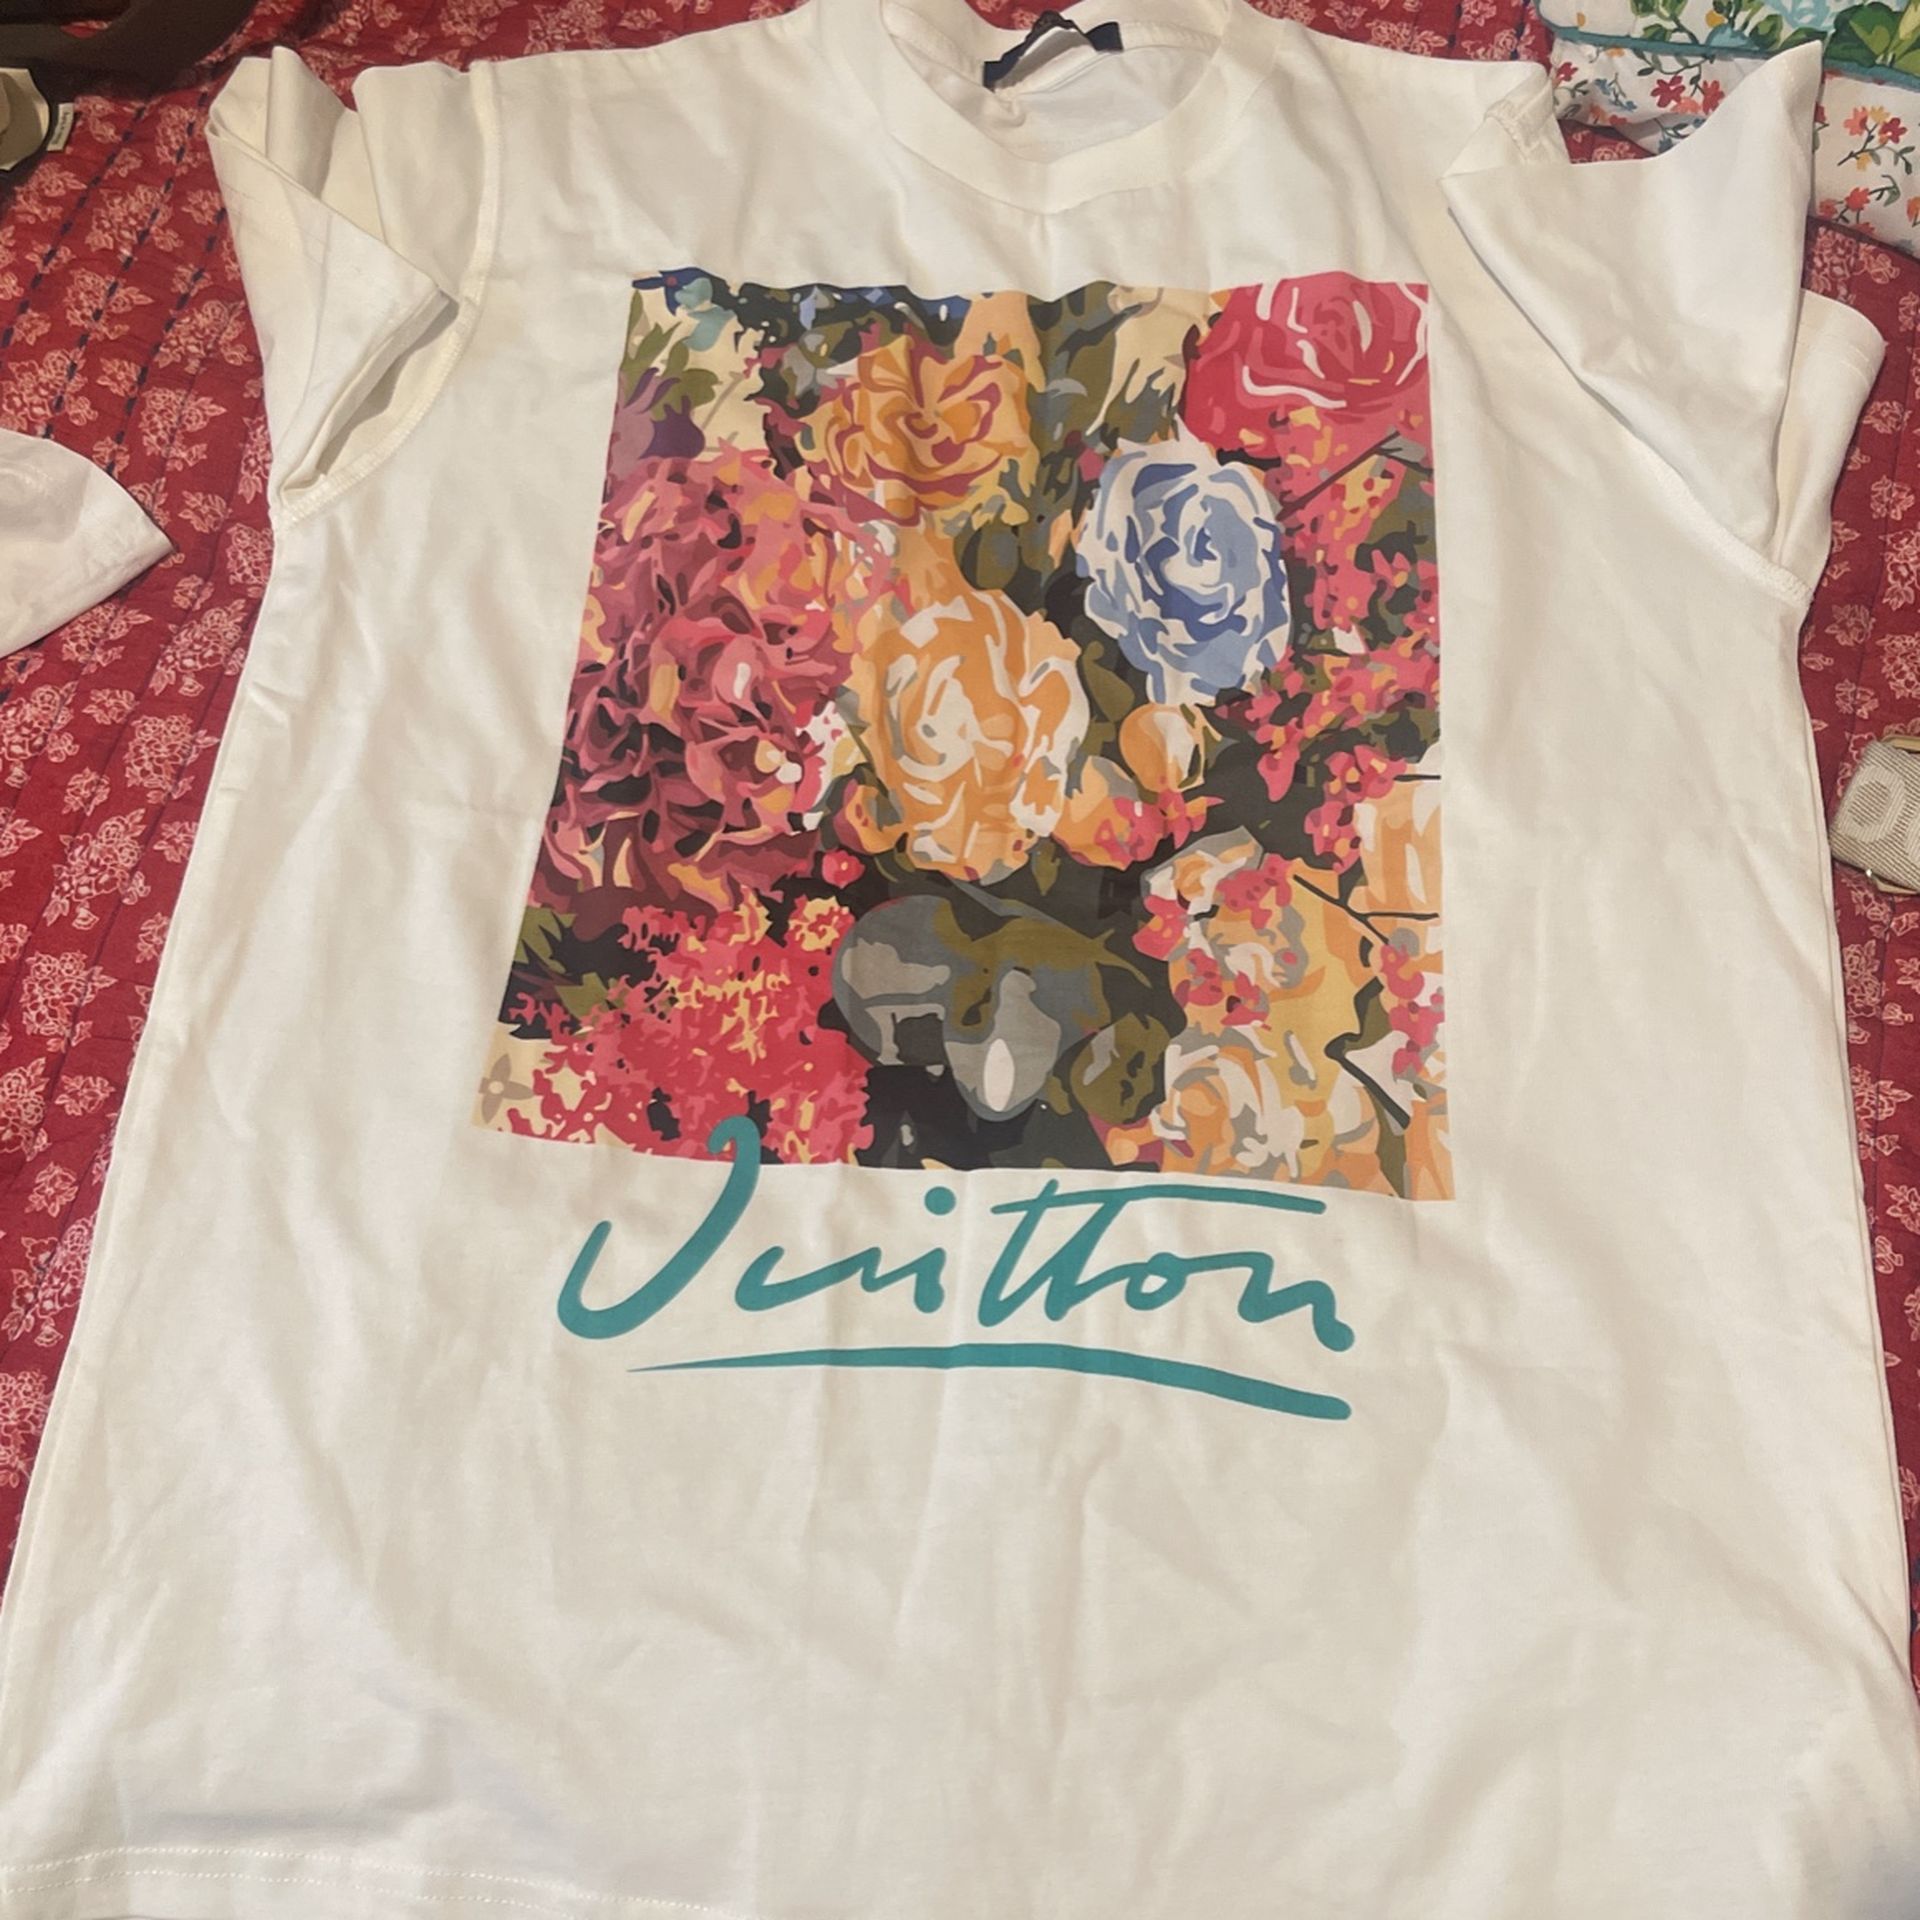 Authentic Loius Vuitton T Shirt